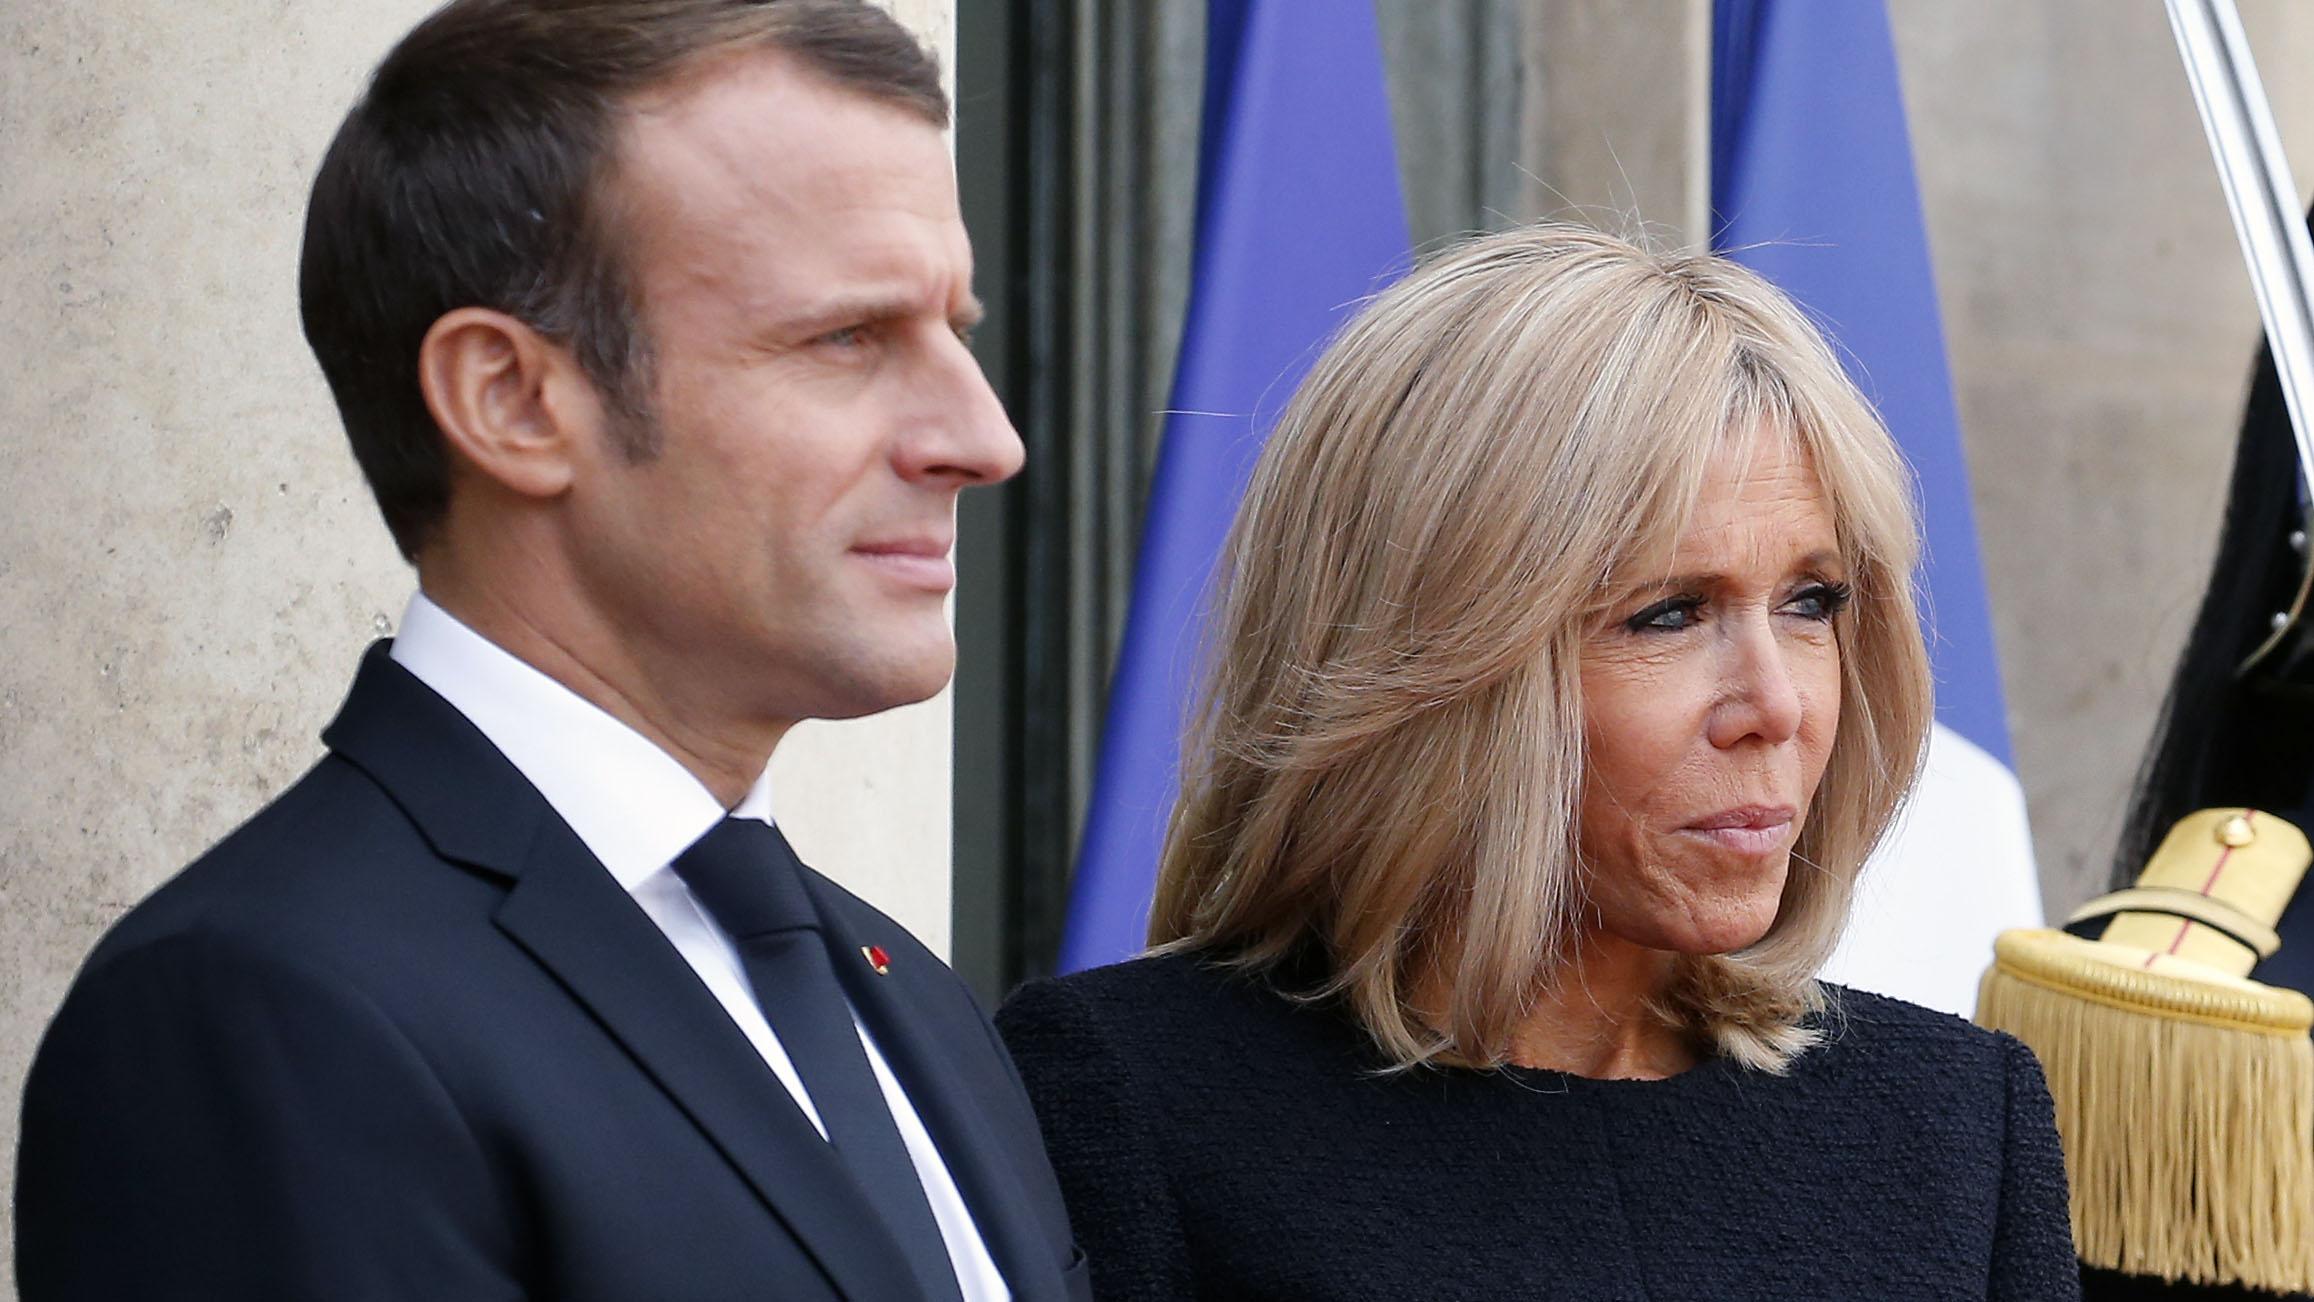 Кто жена макрона президента франции. Бриджит жена президента Франции. Бриджит Макрон и Эммануэль Макрон. Бриджит Макрон жена президента Франции.